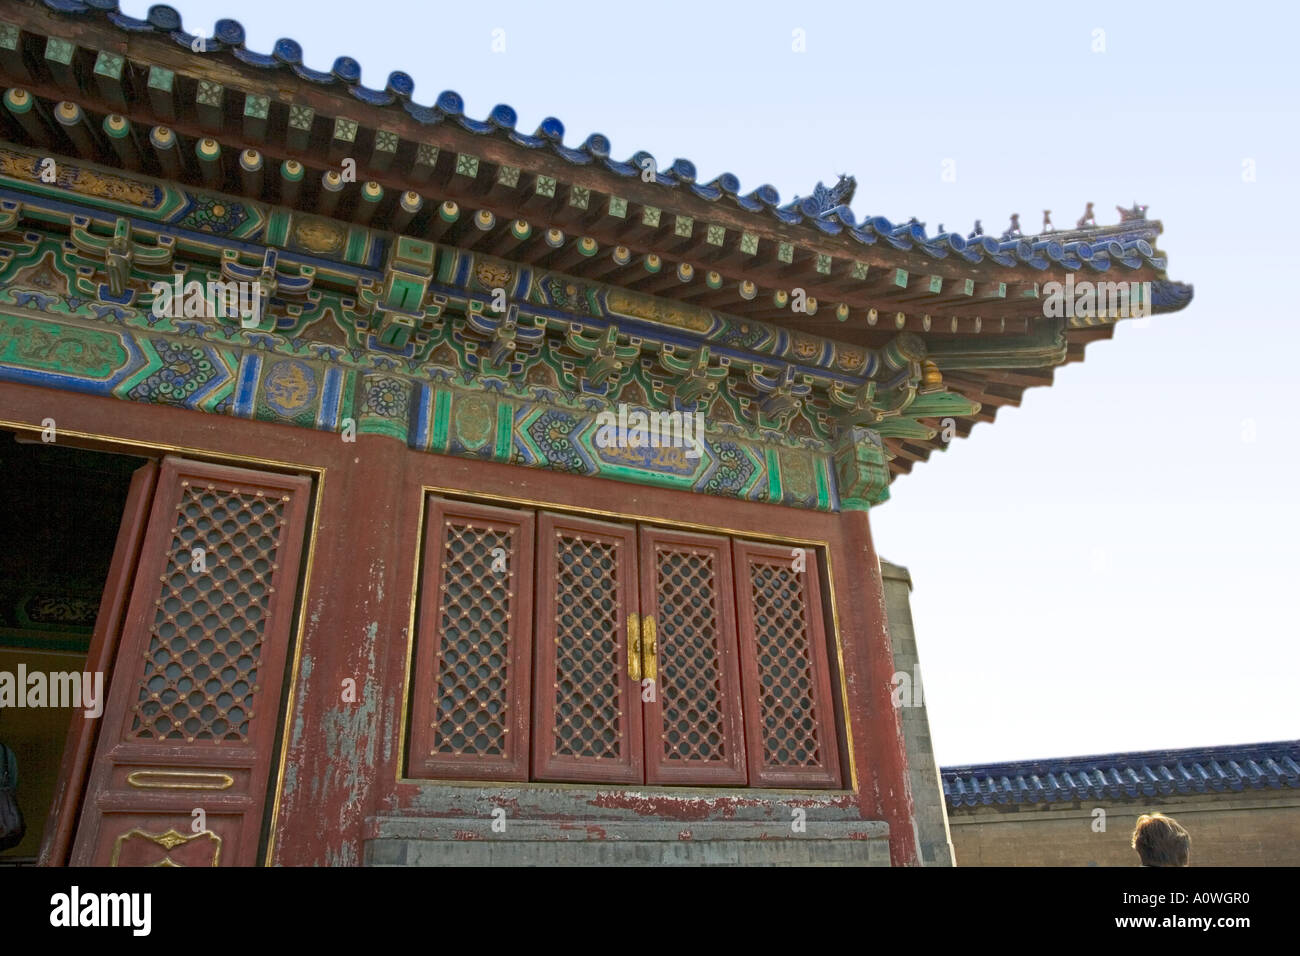 Chine Pékin Le Temple du Ciel a été commencé pendant le règne de l'Empereur Yongle Détail des tuiles peintes en bleu ciel contre Banque D'Images